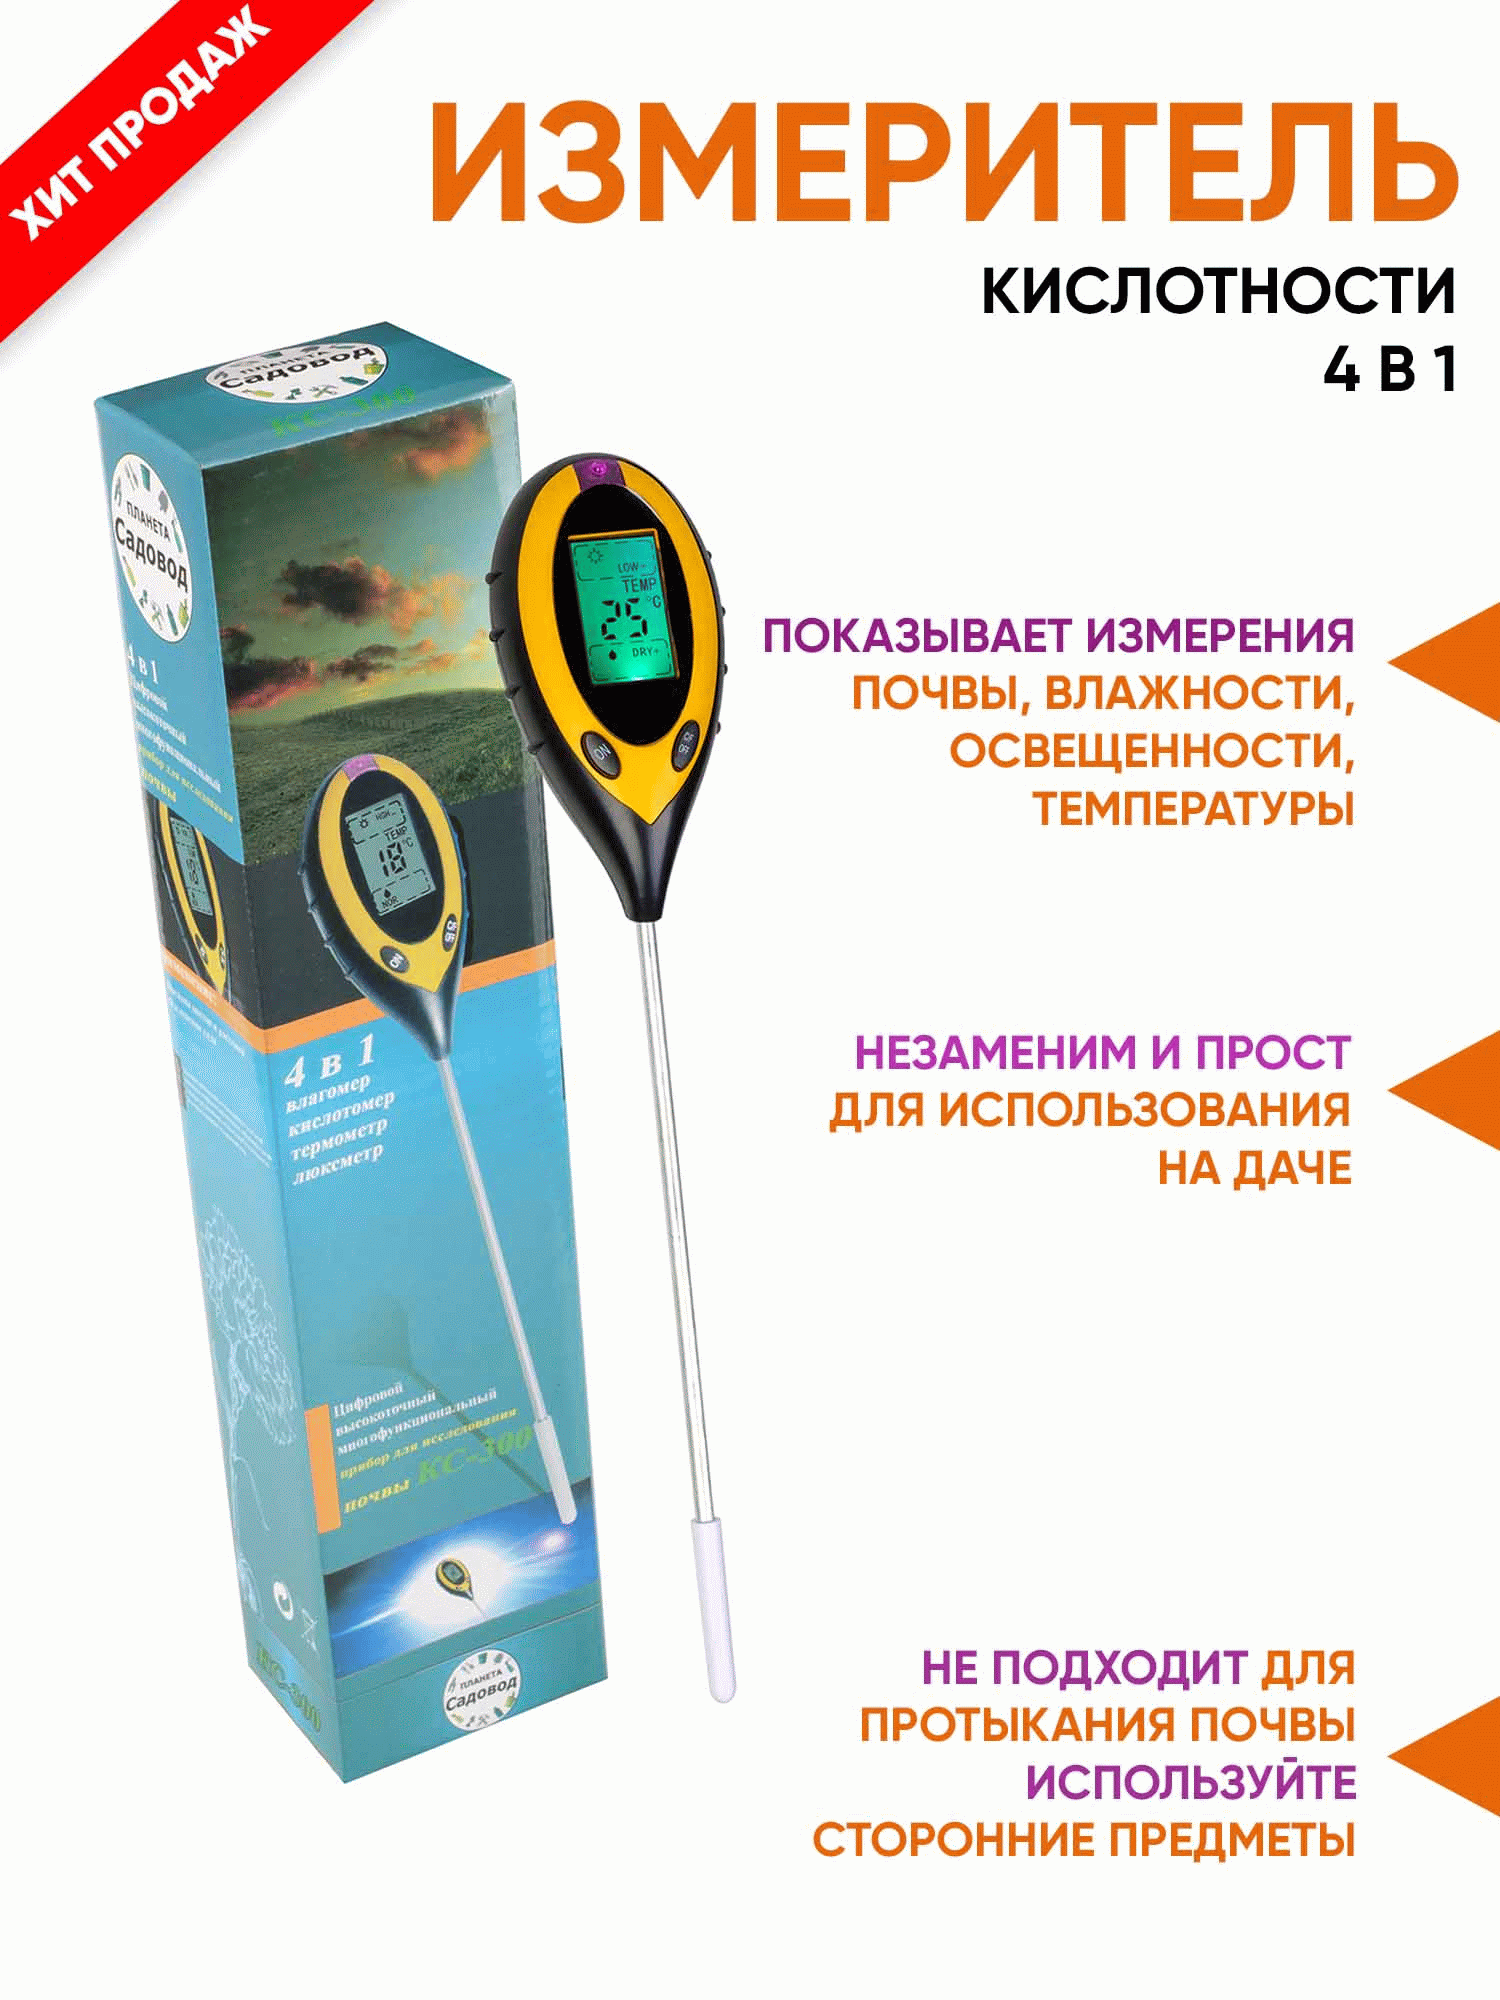 <b>Измеритель кислотности почвы KC-300</b> - цифровое устройство для точных измерений кислотности, влажности, освещенности и температуры почвы